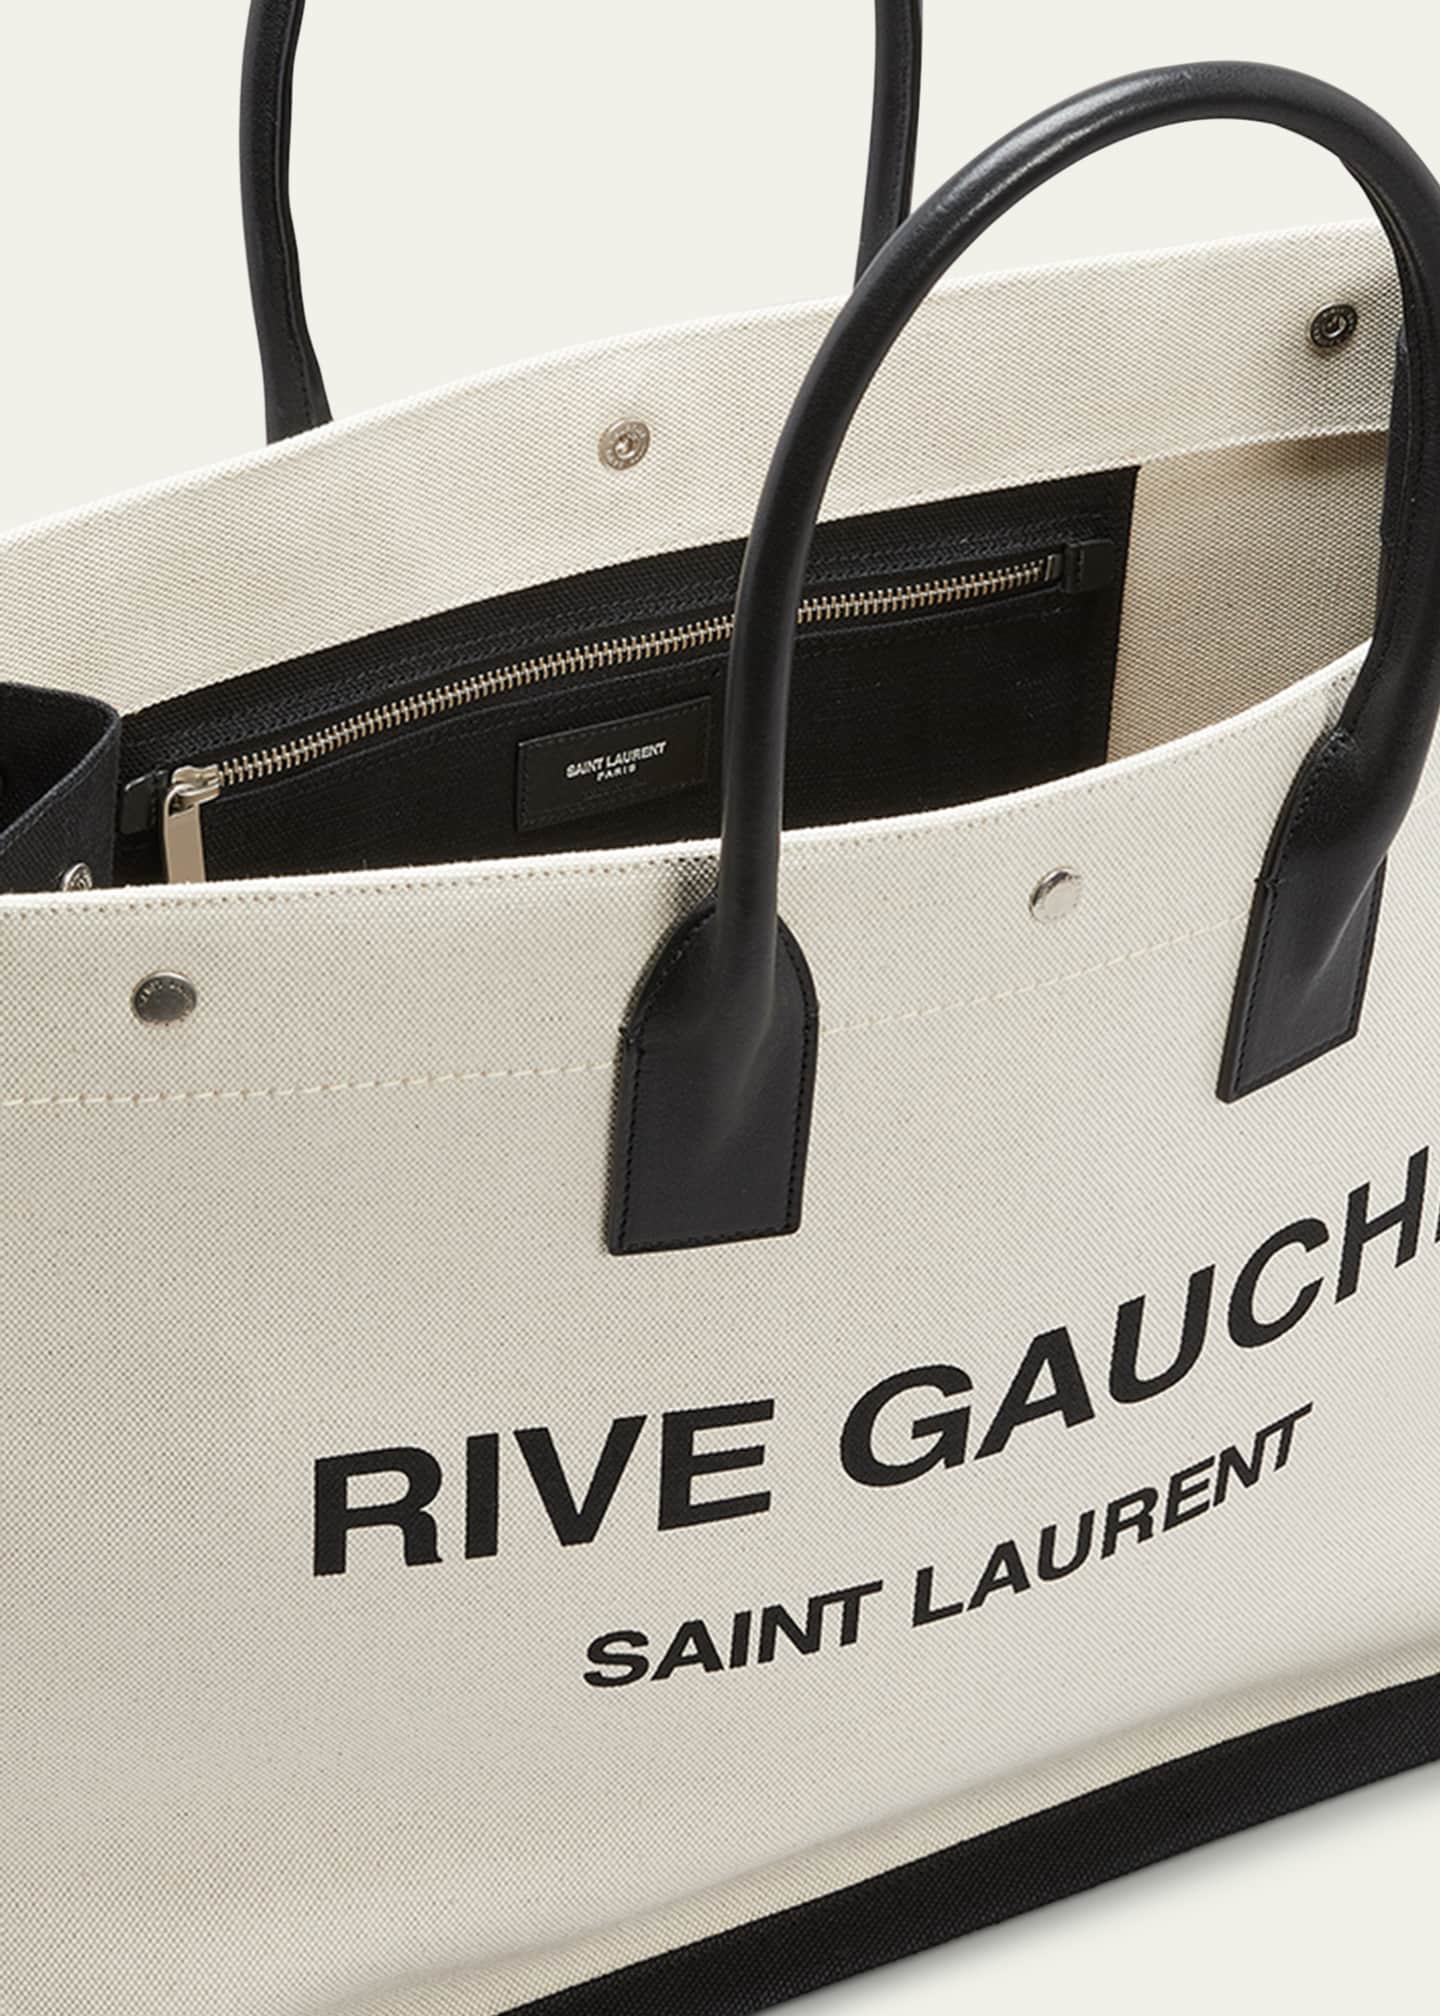 Saint Laurent Men's Rive Gauche Linen and Leather Tote Bag